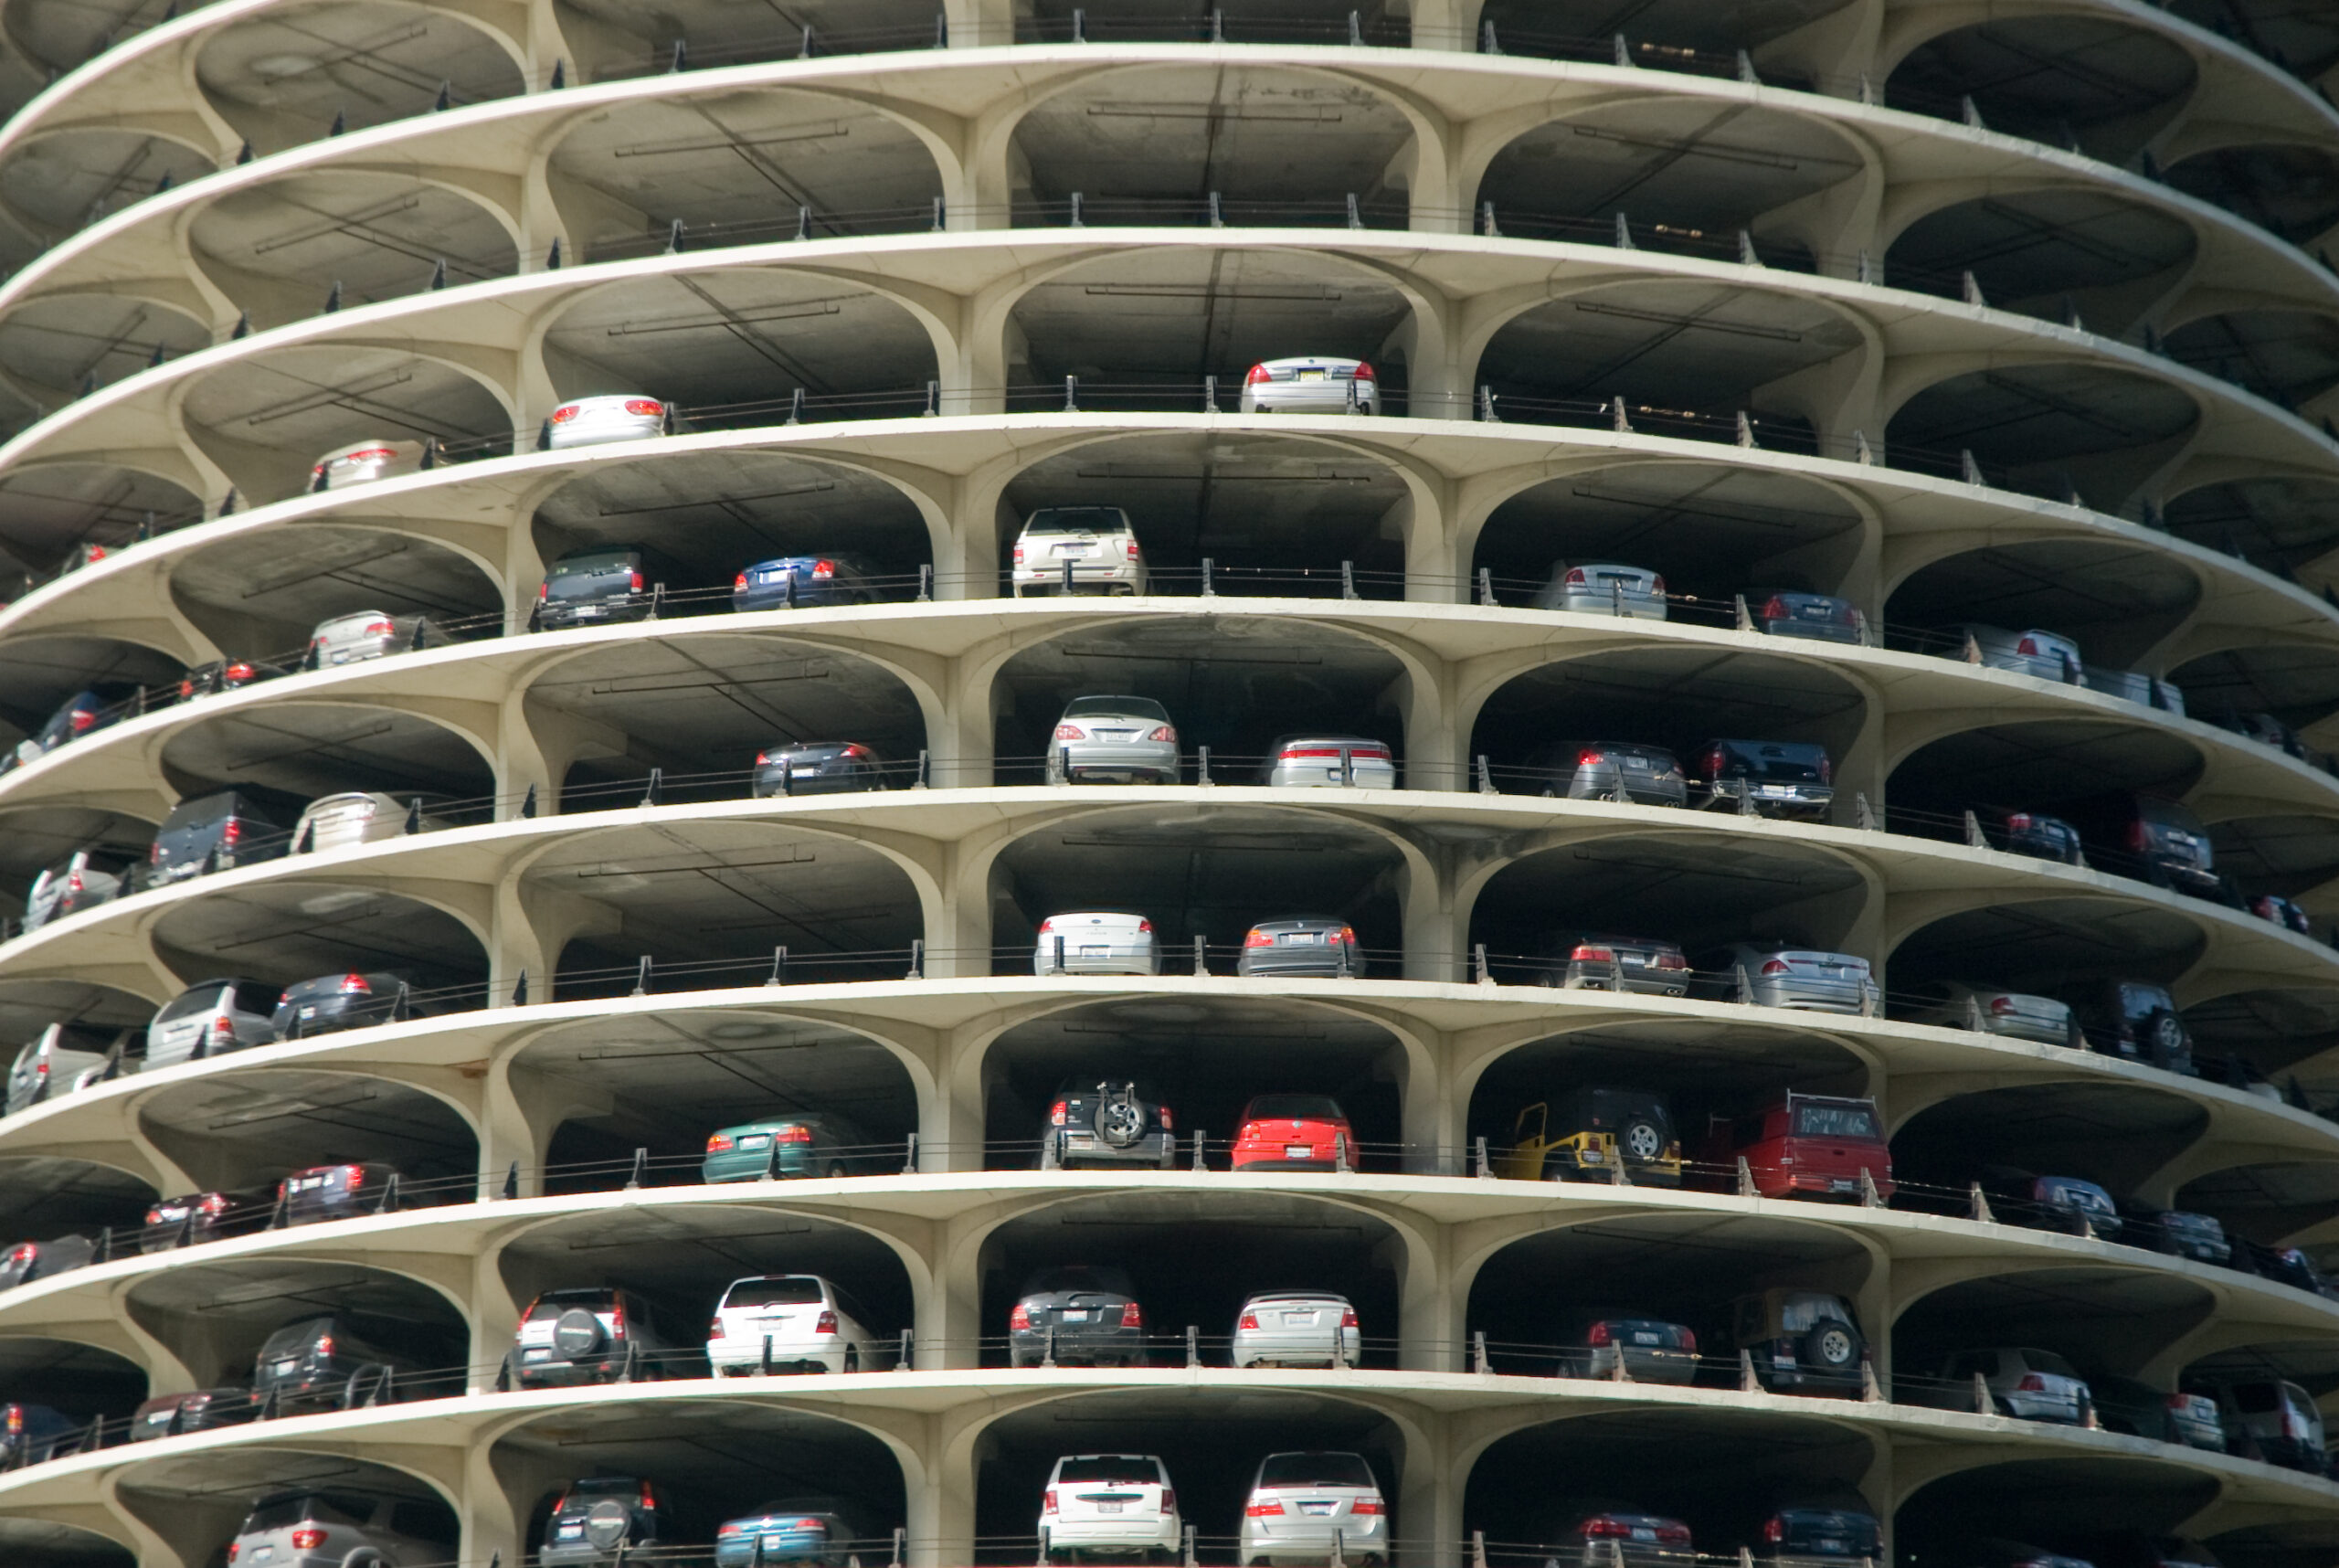 5 Best Chicago Parking Apps